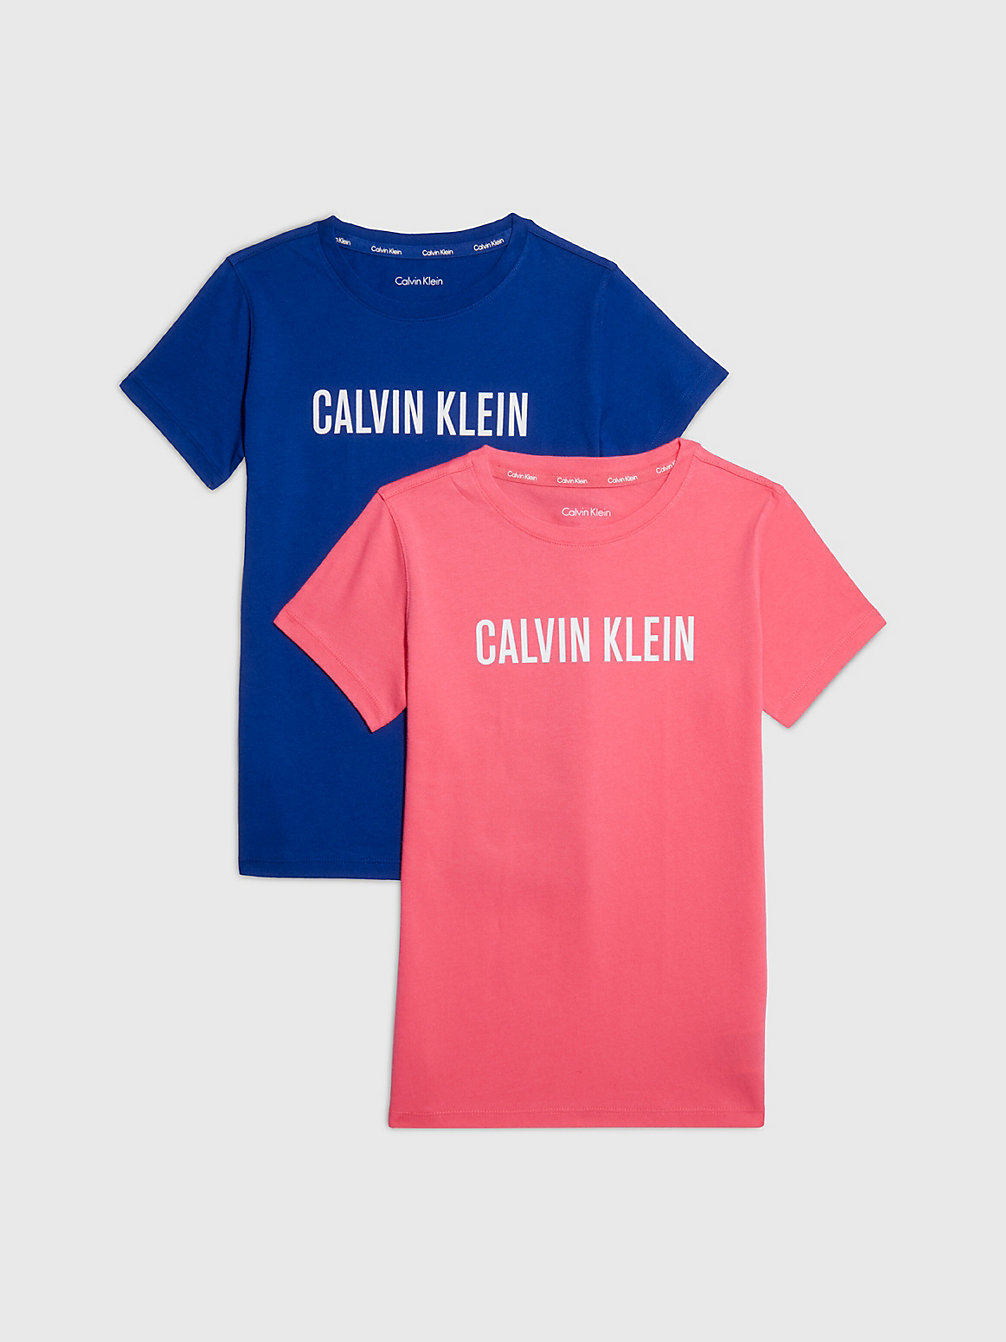 T-Shirt In Confezione Da 2 - Intense Power > PINKFLASH/BOLDBLUE > undefined girls > Calvin Klein